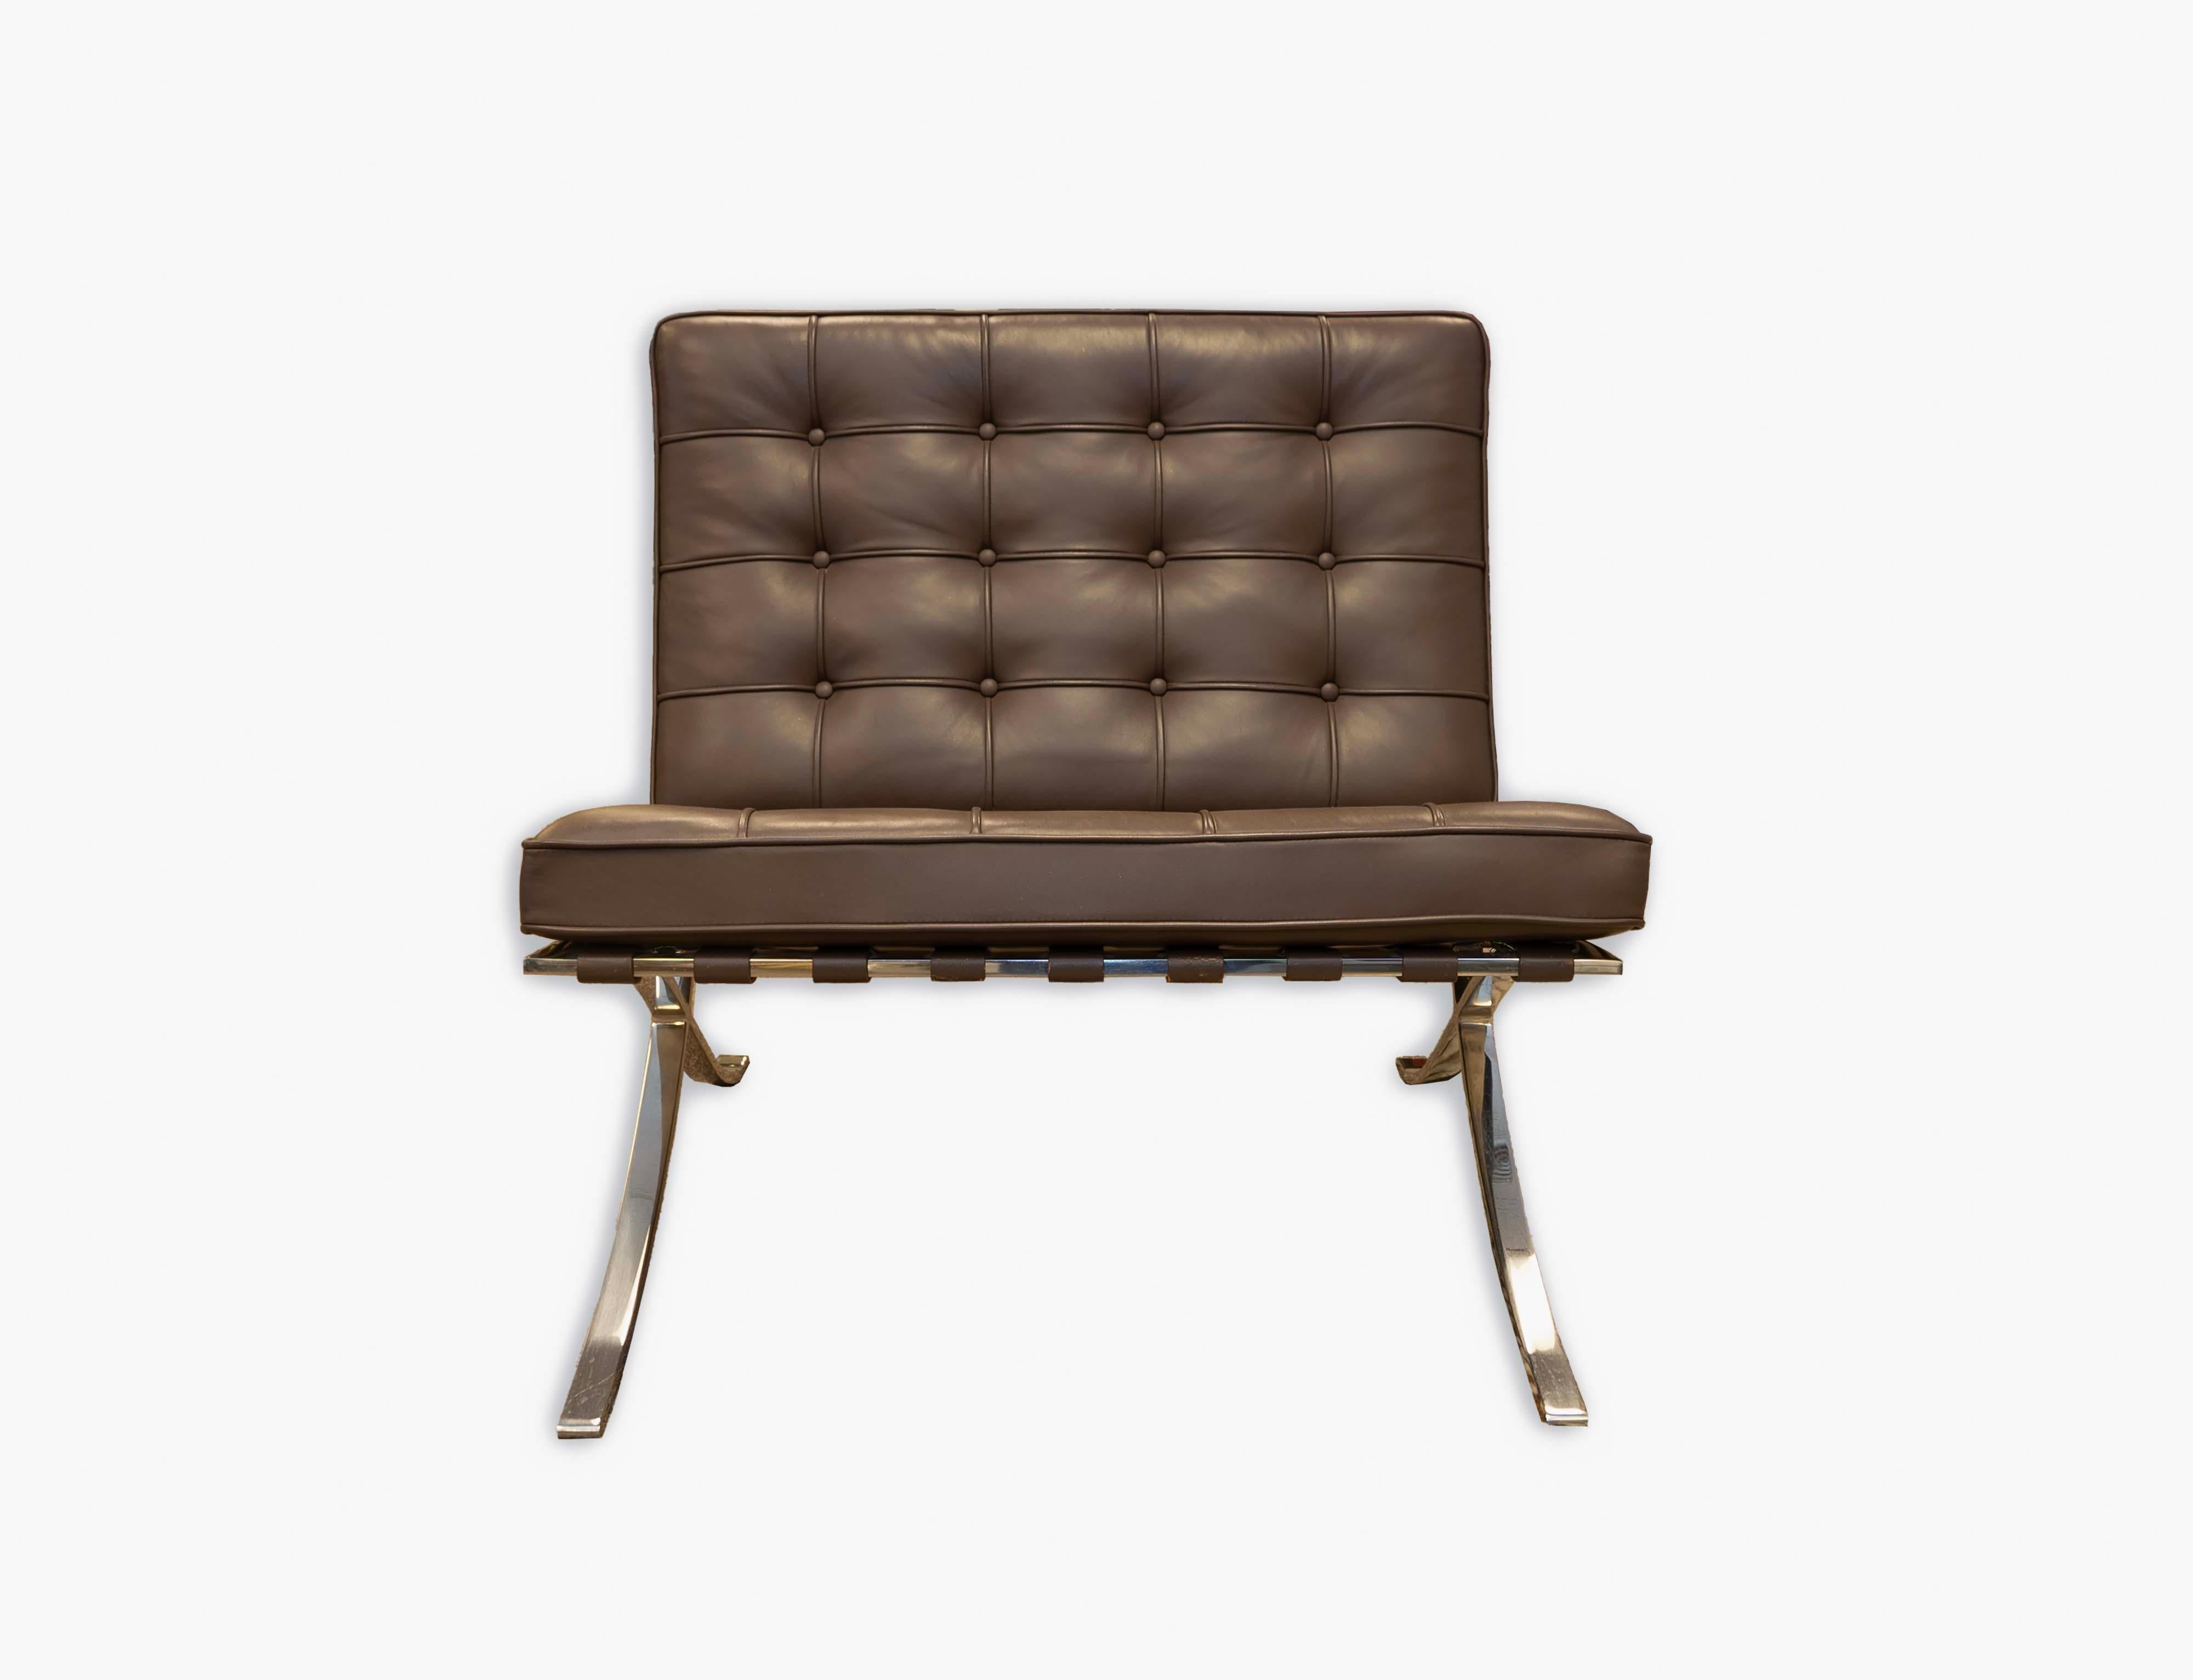 Découvrez le summum de l'élégance intemporelle avec cette authentique chaise Barcelona, conçue par Mies Van Der Rohe pour Knoll. Fabriqué avec un somptueux cuir marron et un capitonnage caractéristique, ce meuble sert non seulement de siège luxueux